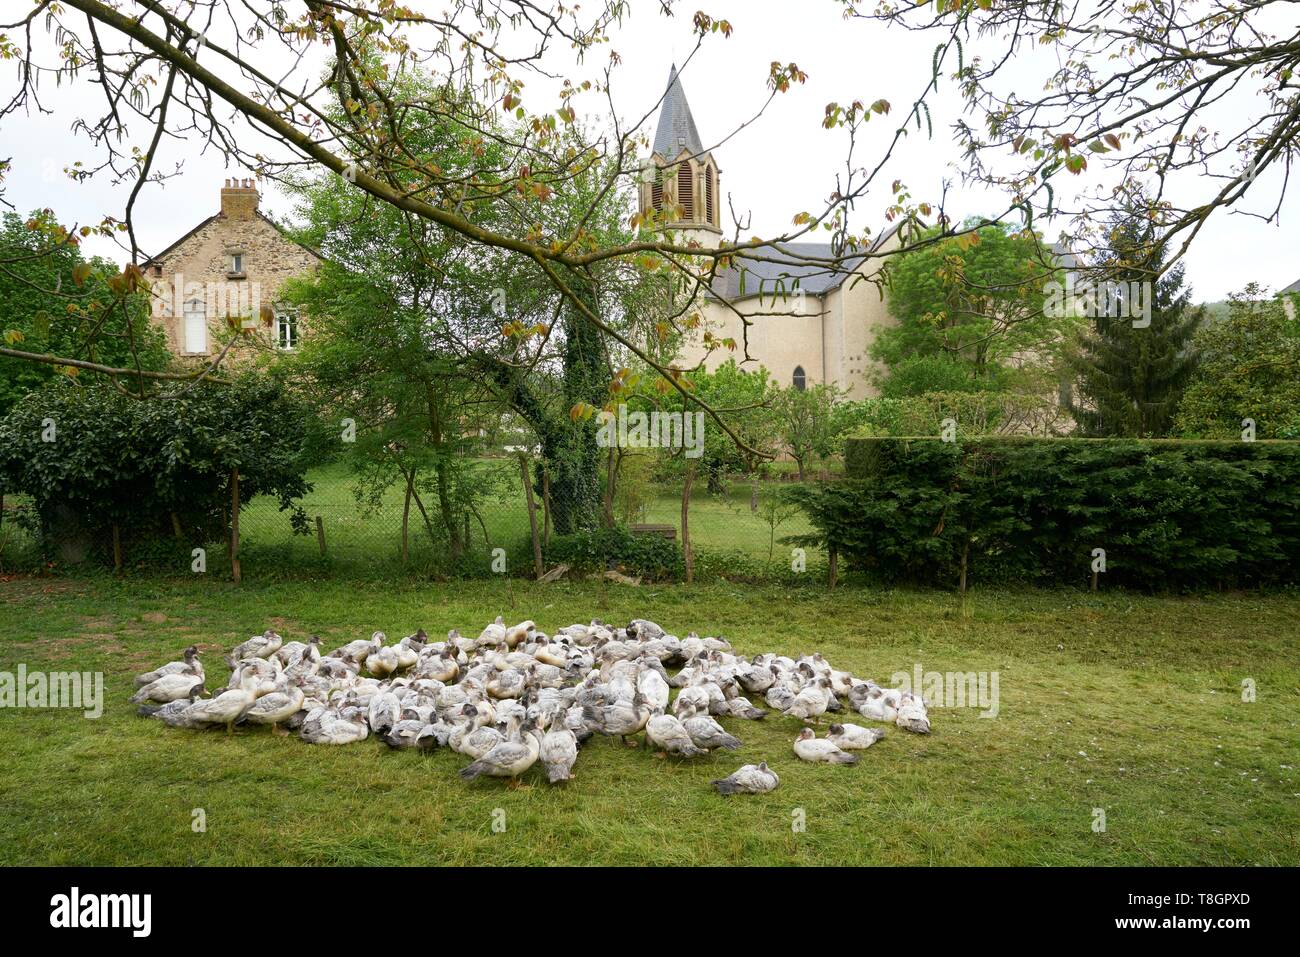 Frankreich, Aveyron, Monteils, die Farm von Carles, Zucht von Enten in der Luft Stockfoto